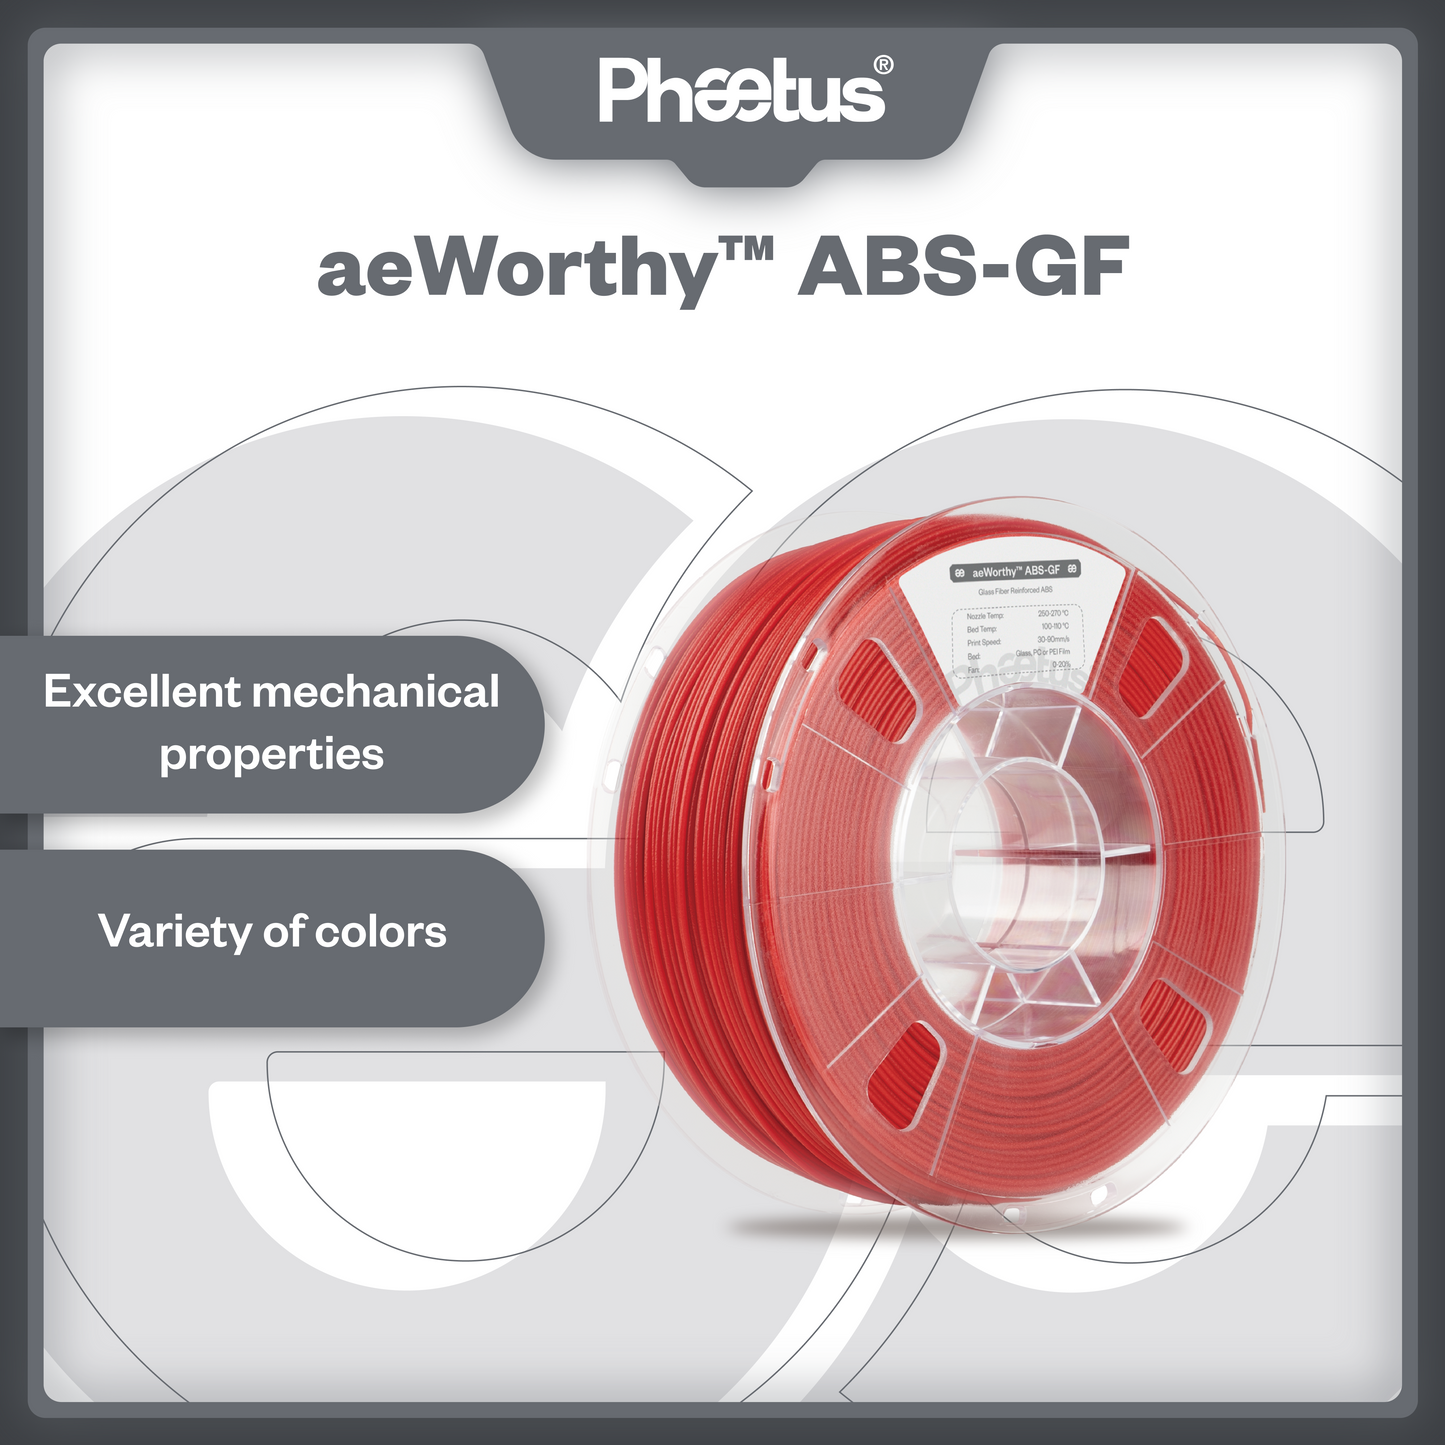 aeWorthy™ ABS-GF